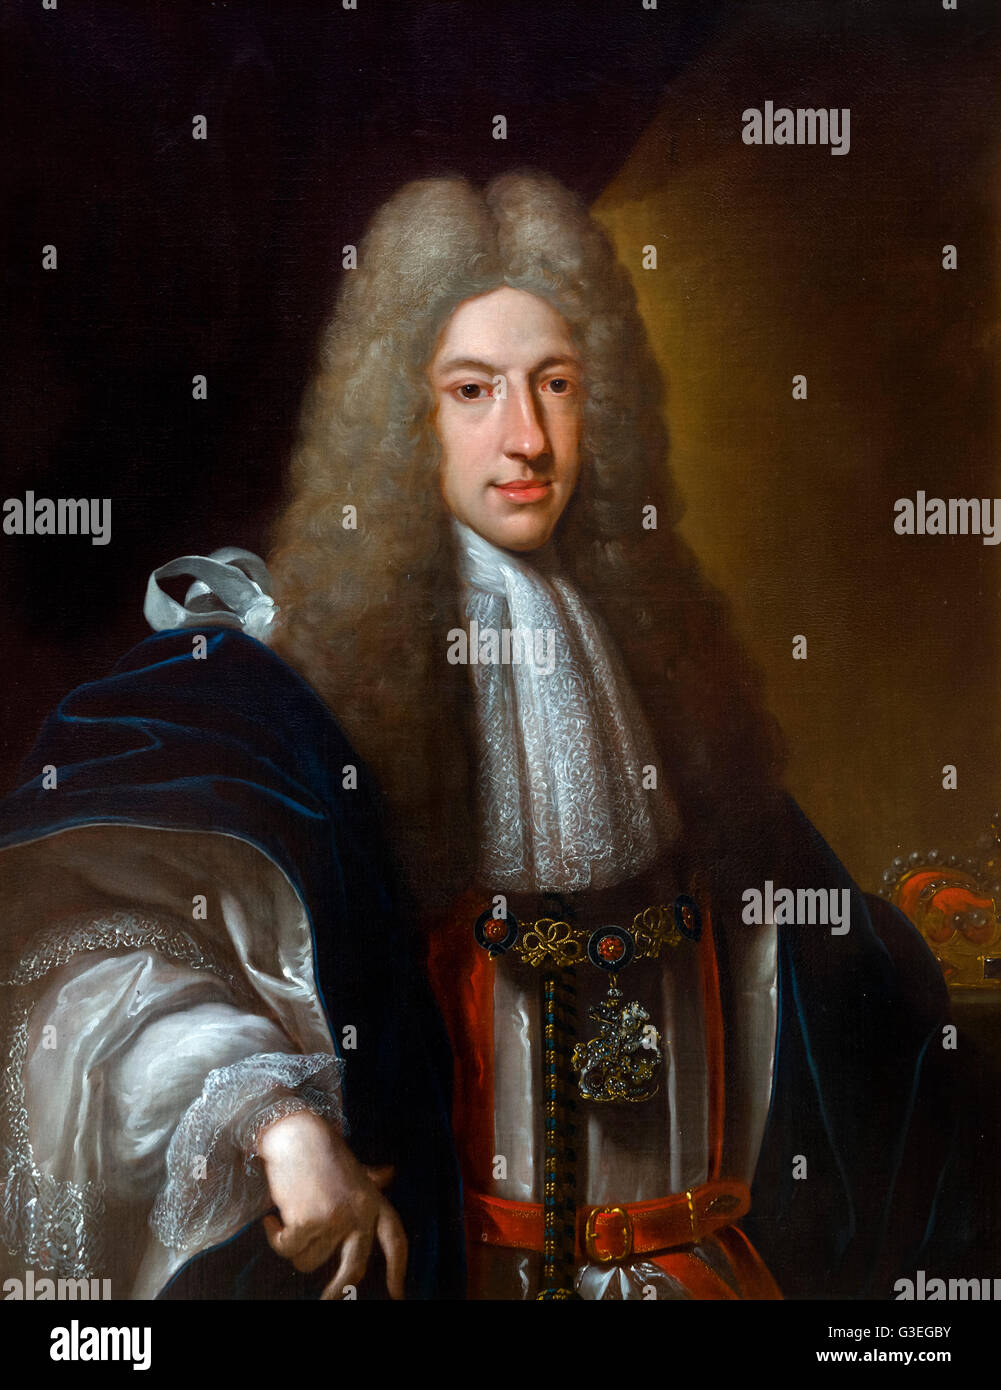 Prinz James Francis Edward Stuart (1688-1766), genannt the Old Pretender war der Sohn des abgesetzten James II von England und Irland, VII von Schottland. So behauptete er die englischen, schottischen und irischen thronen (als James III. von England und Irland und James VIII von Schottland) nach dem Tod seines Vaters im Jahre 1701. Porträt von Francesco Trevisani, Öl auf Leinwand, 1720. Stockfoto